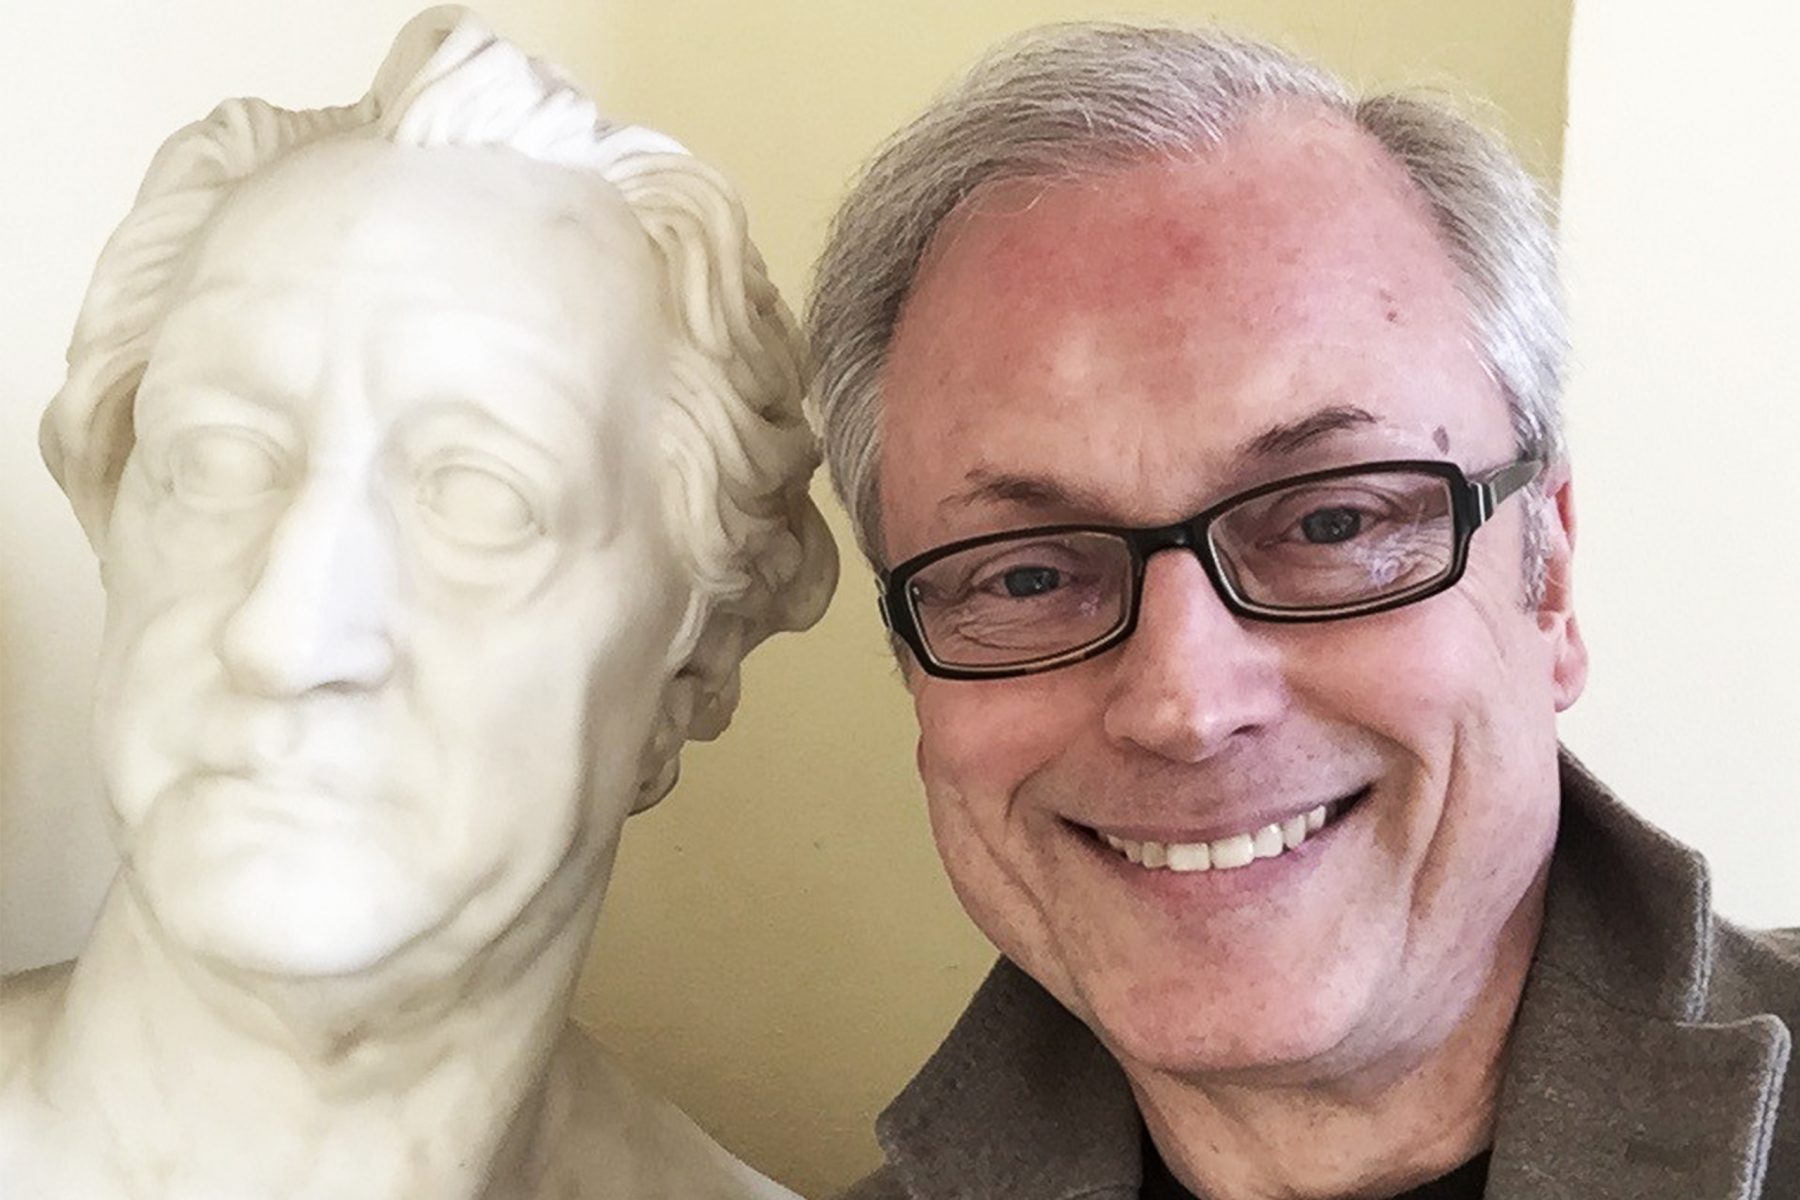 Links ist eine weiße Marmorskulptur des Kopfes eines älteren Goethes. Rechts blickt ein Mann freundlich in die Kamera, er trägt eine Brille.